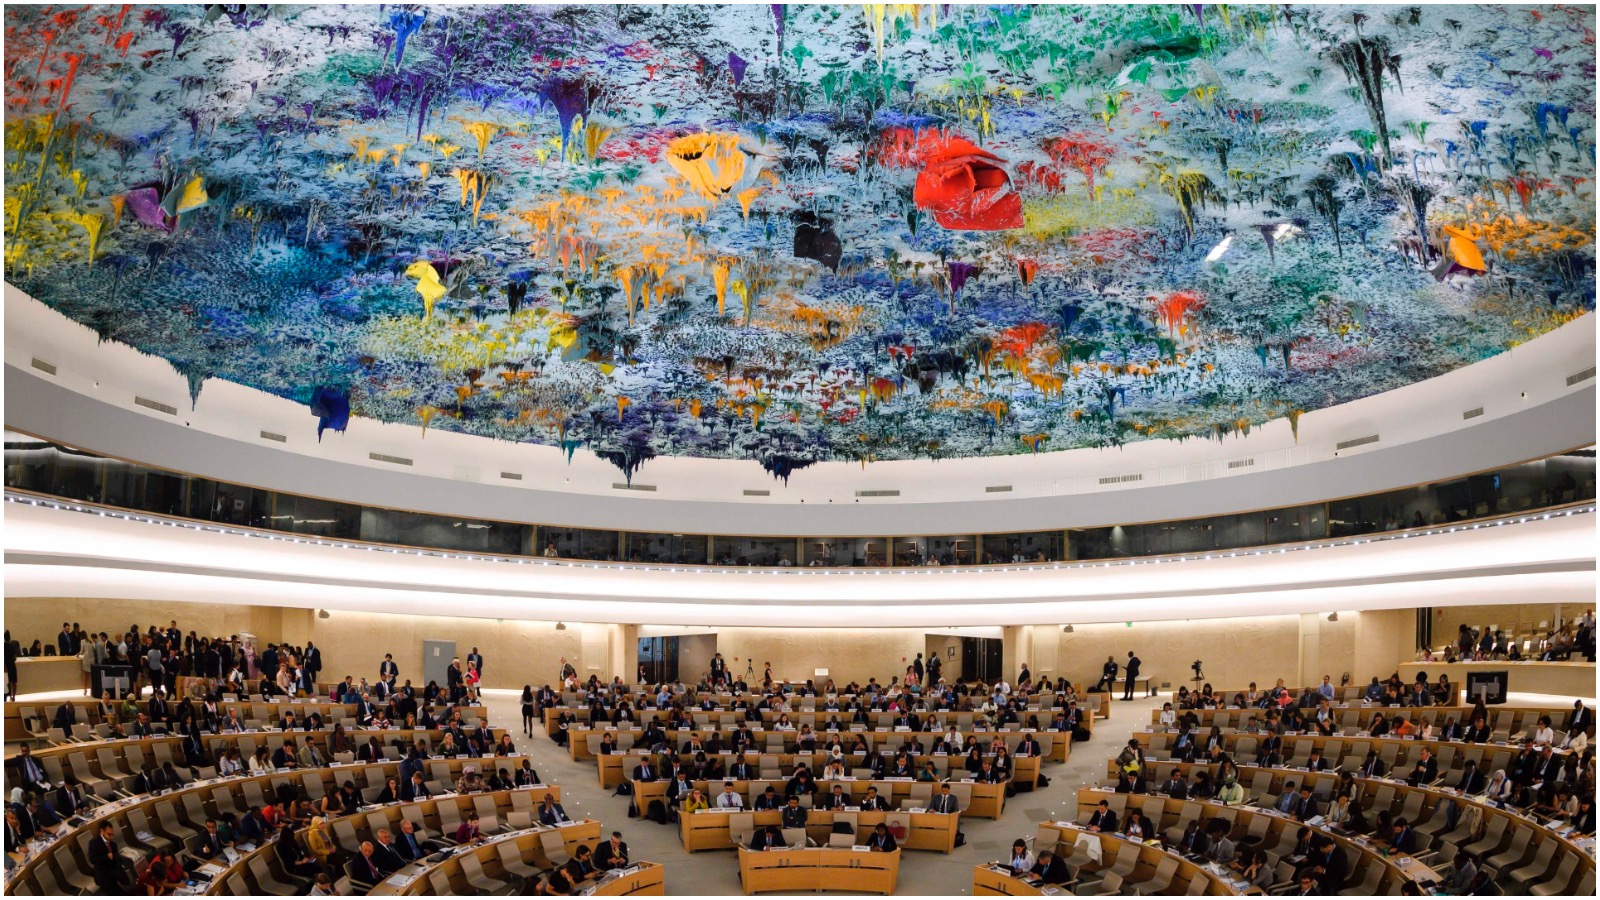 Tim Whyte (MS) om Danmarks nye plads i FN’s Menneskerettighedsråd: Kampen for menneskerettigheder skal kæmpes både ude og hjemme, for begge steder mindskes deres råderum